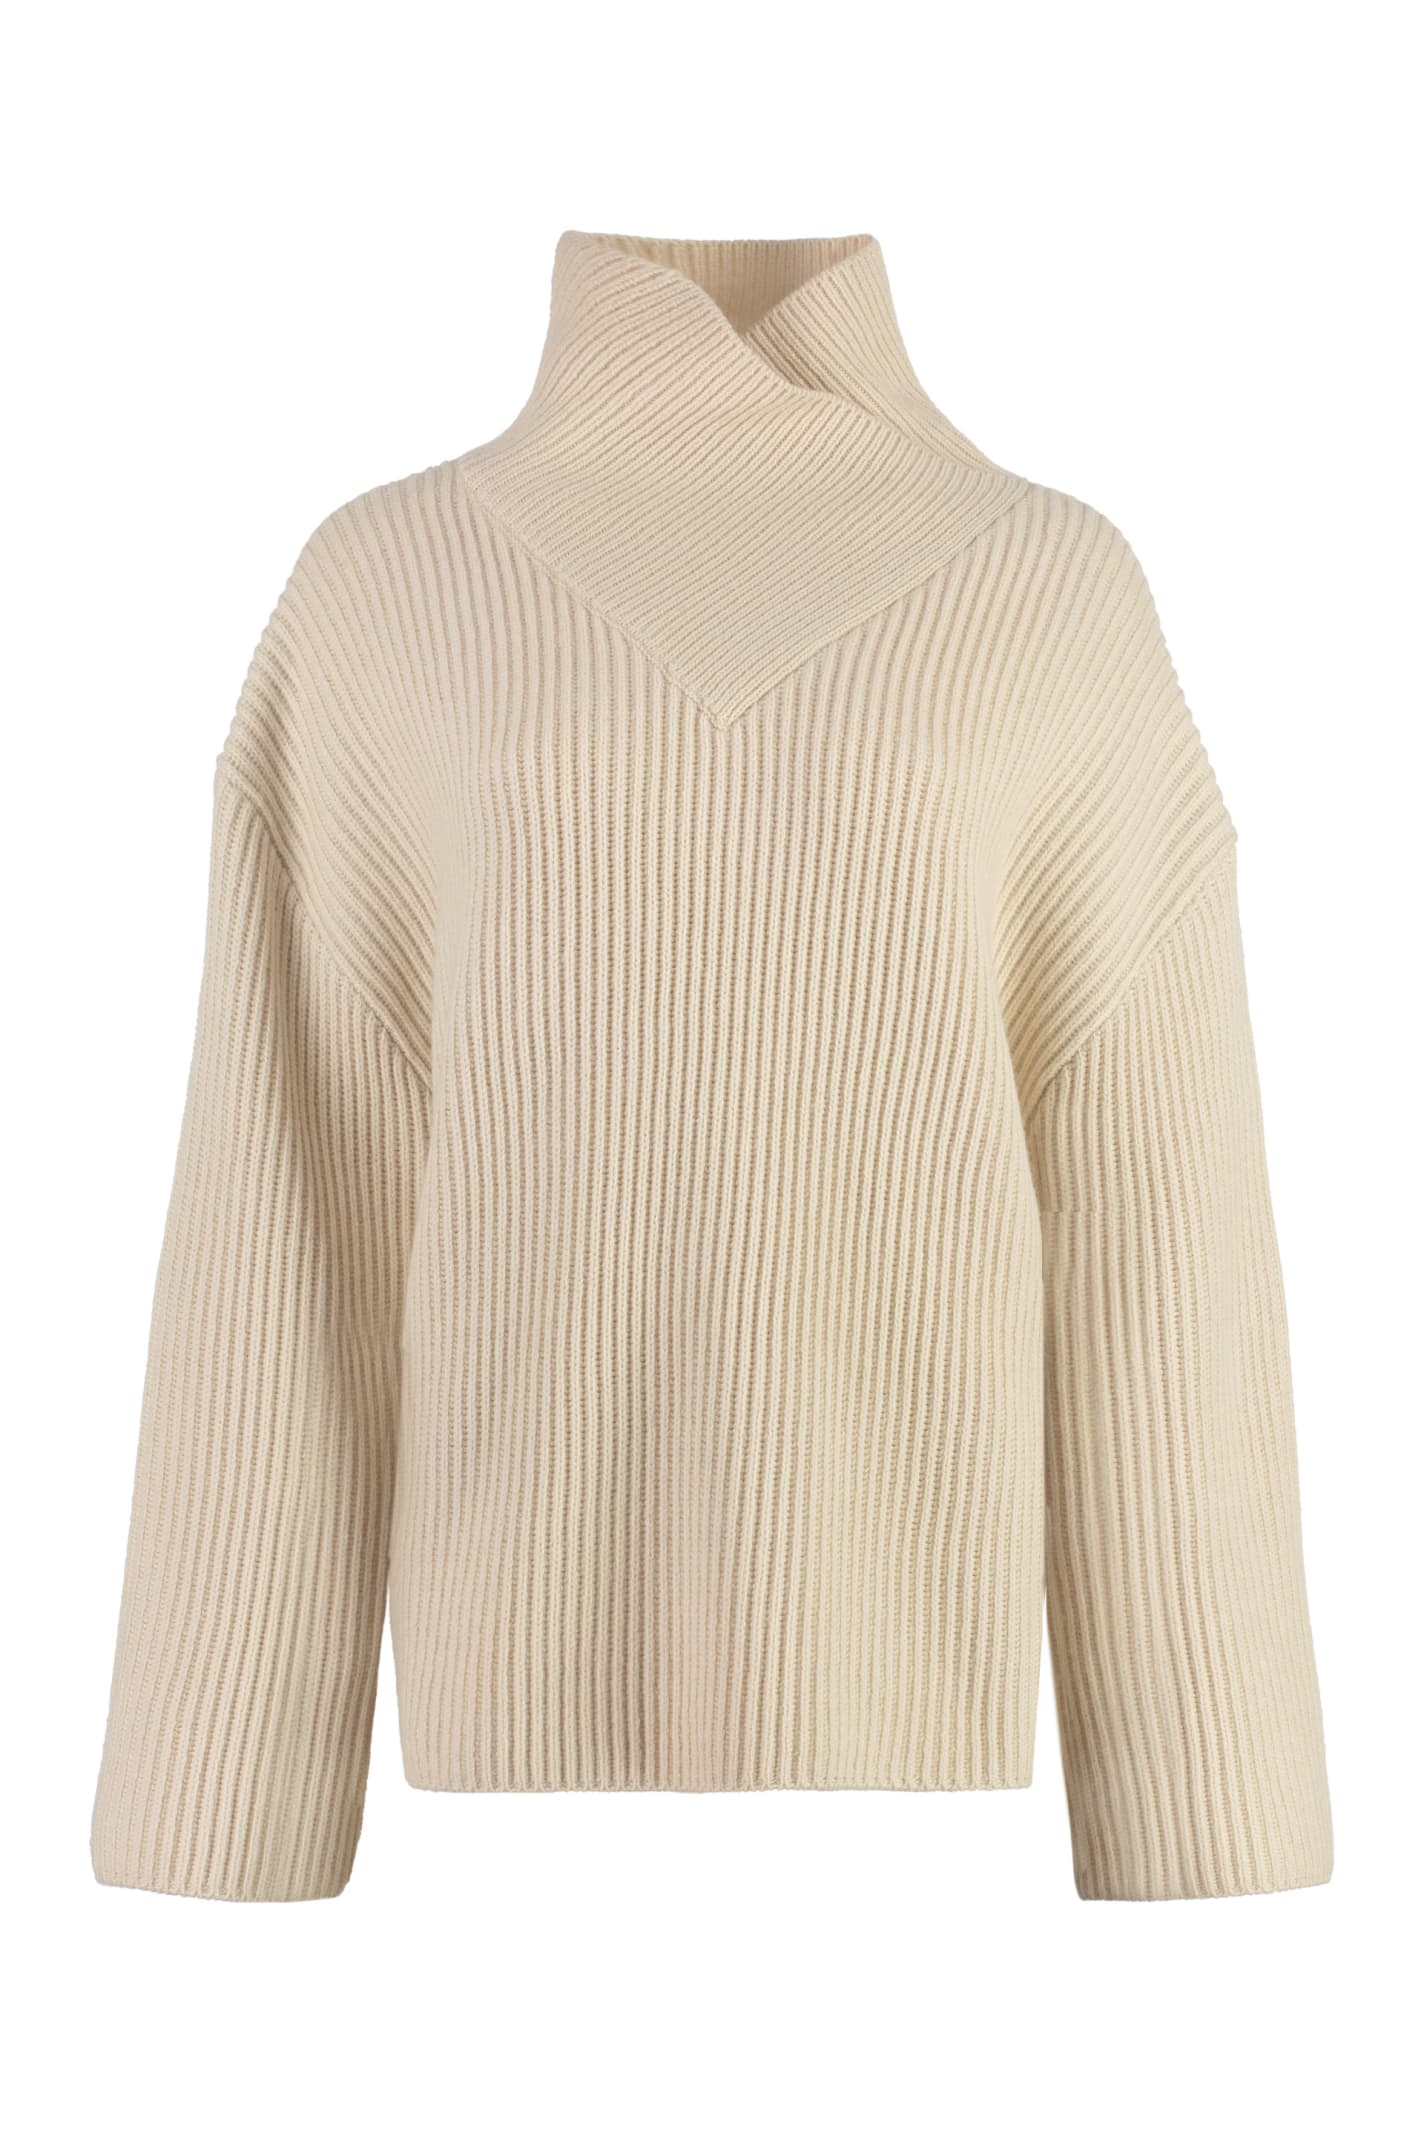 Totême Wool Turtleneck Sweater